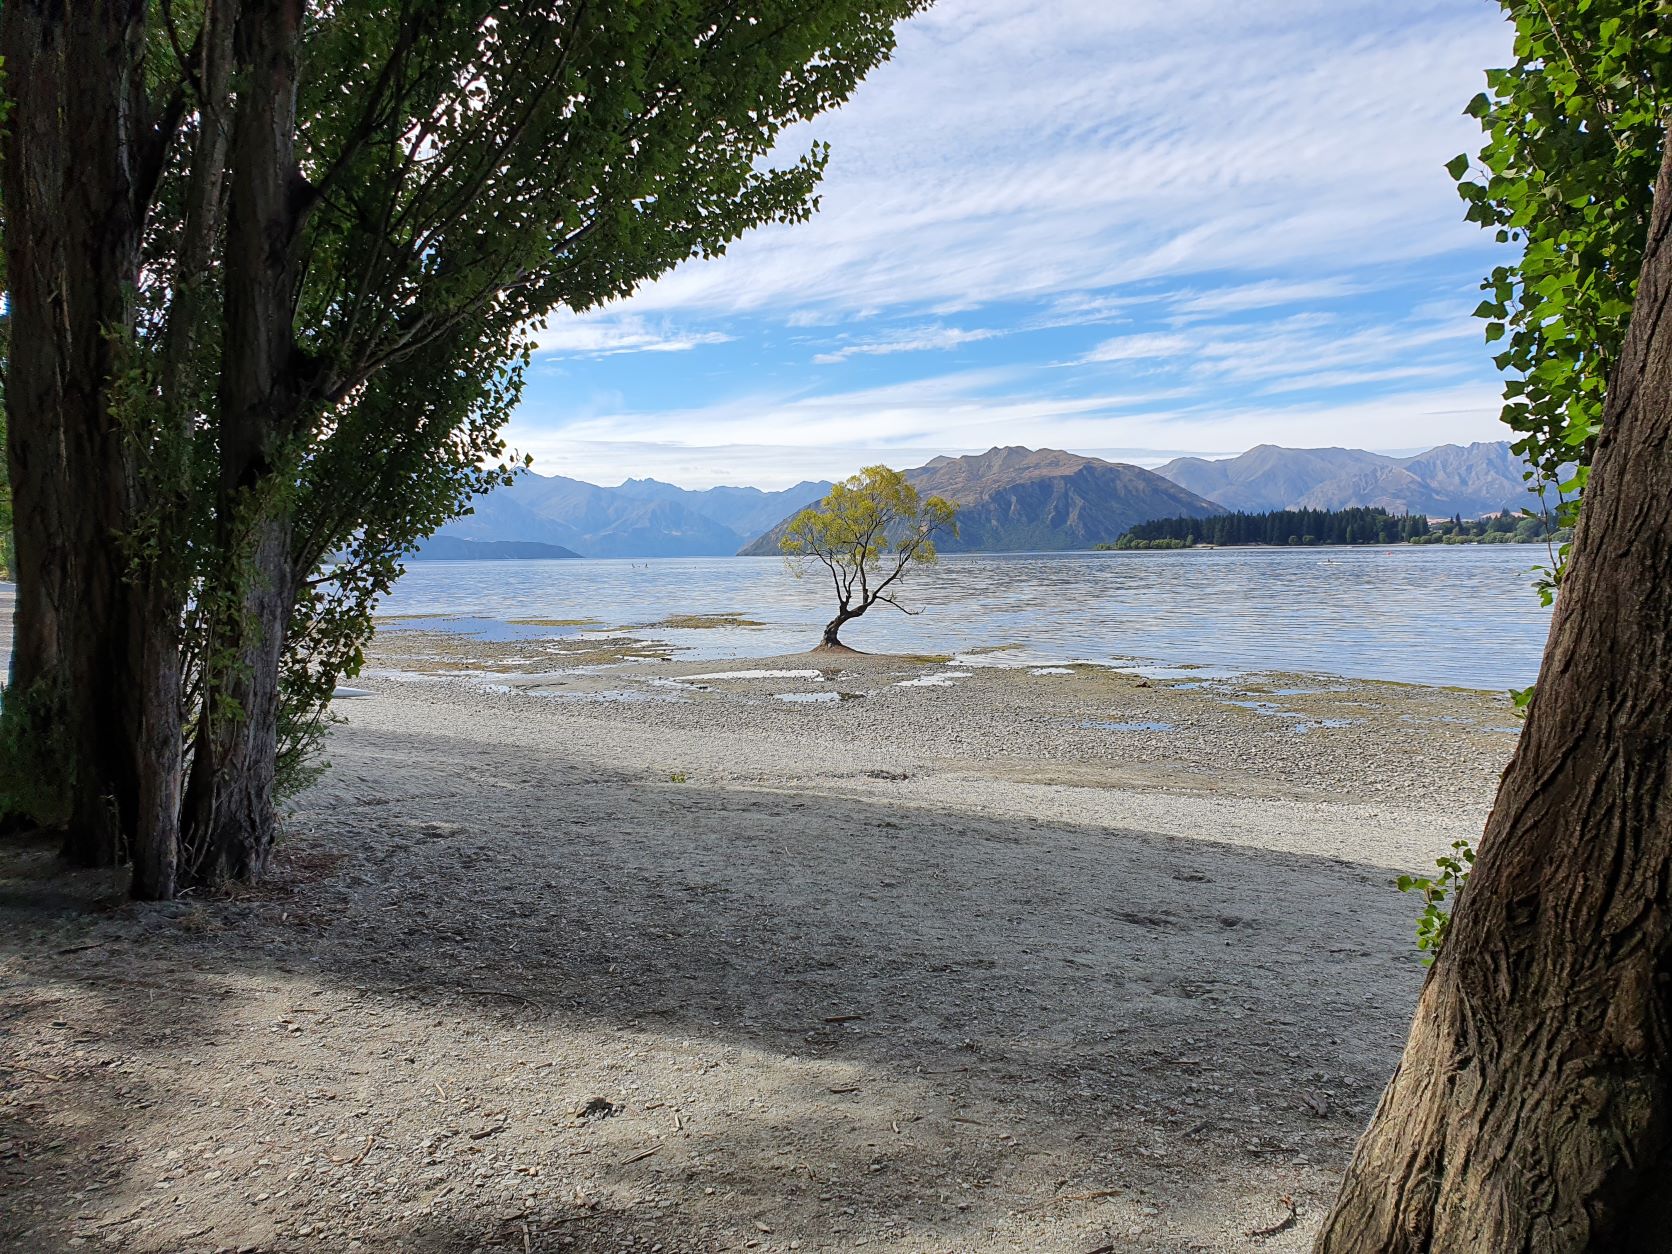 The famous Wanaka tree photographed from the shores of Lake Wanaka